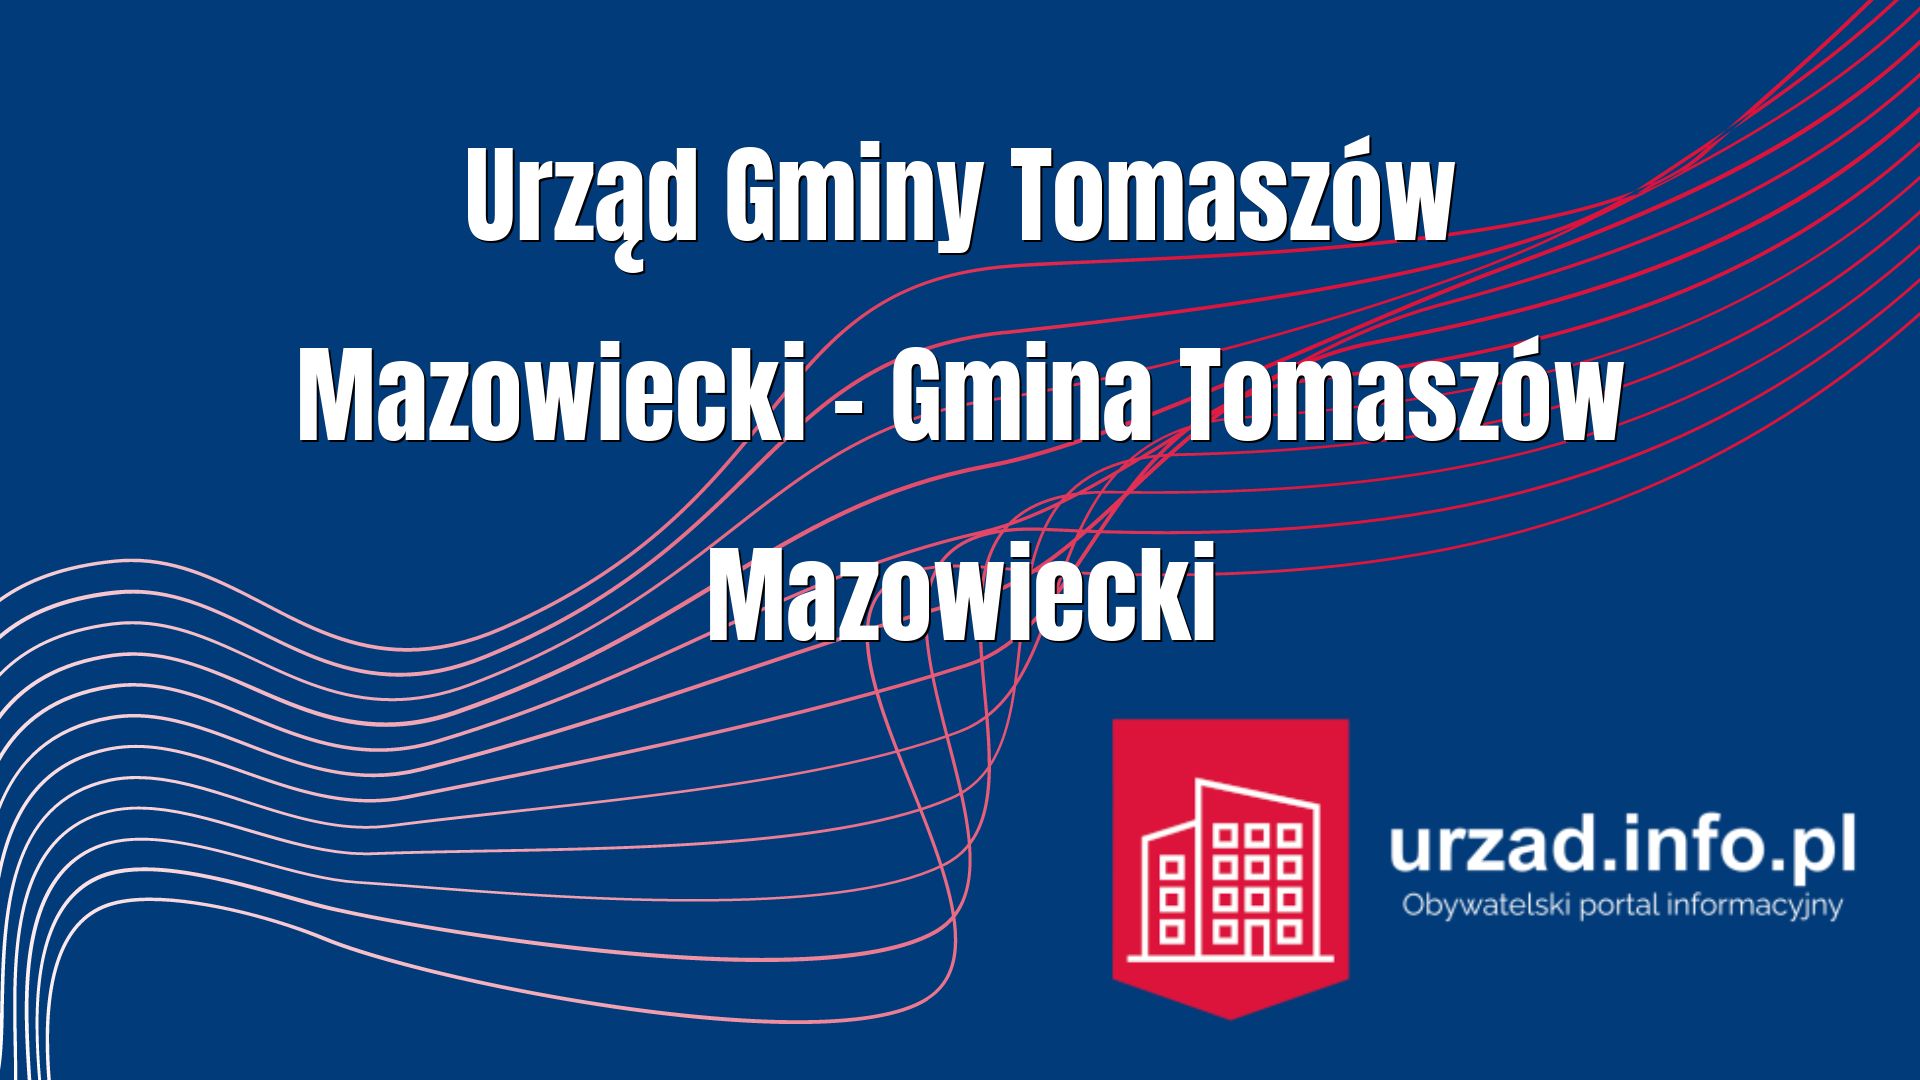 Urząd Gminy Tomaszów Mazowiecki – Gmina Tomaszów Mazowiecki